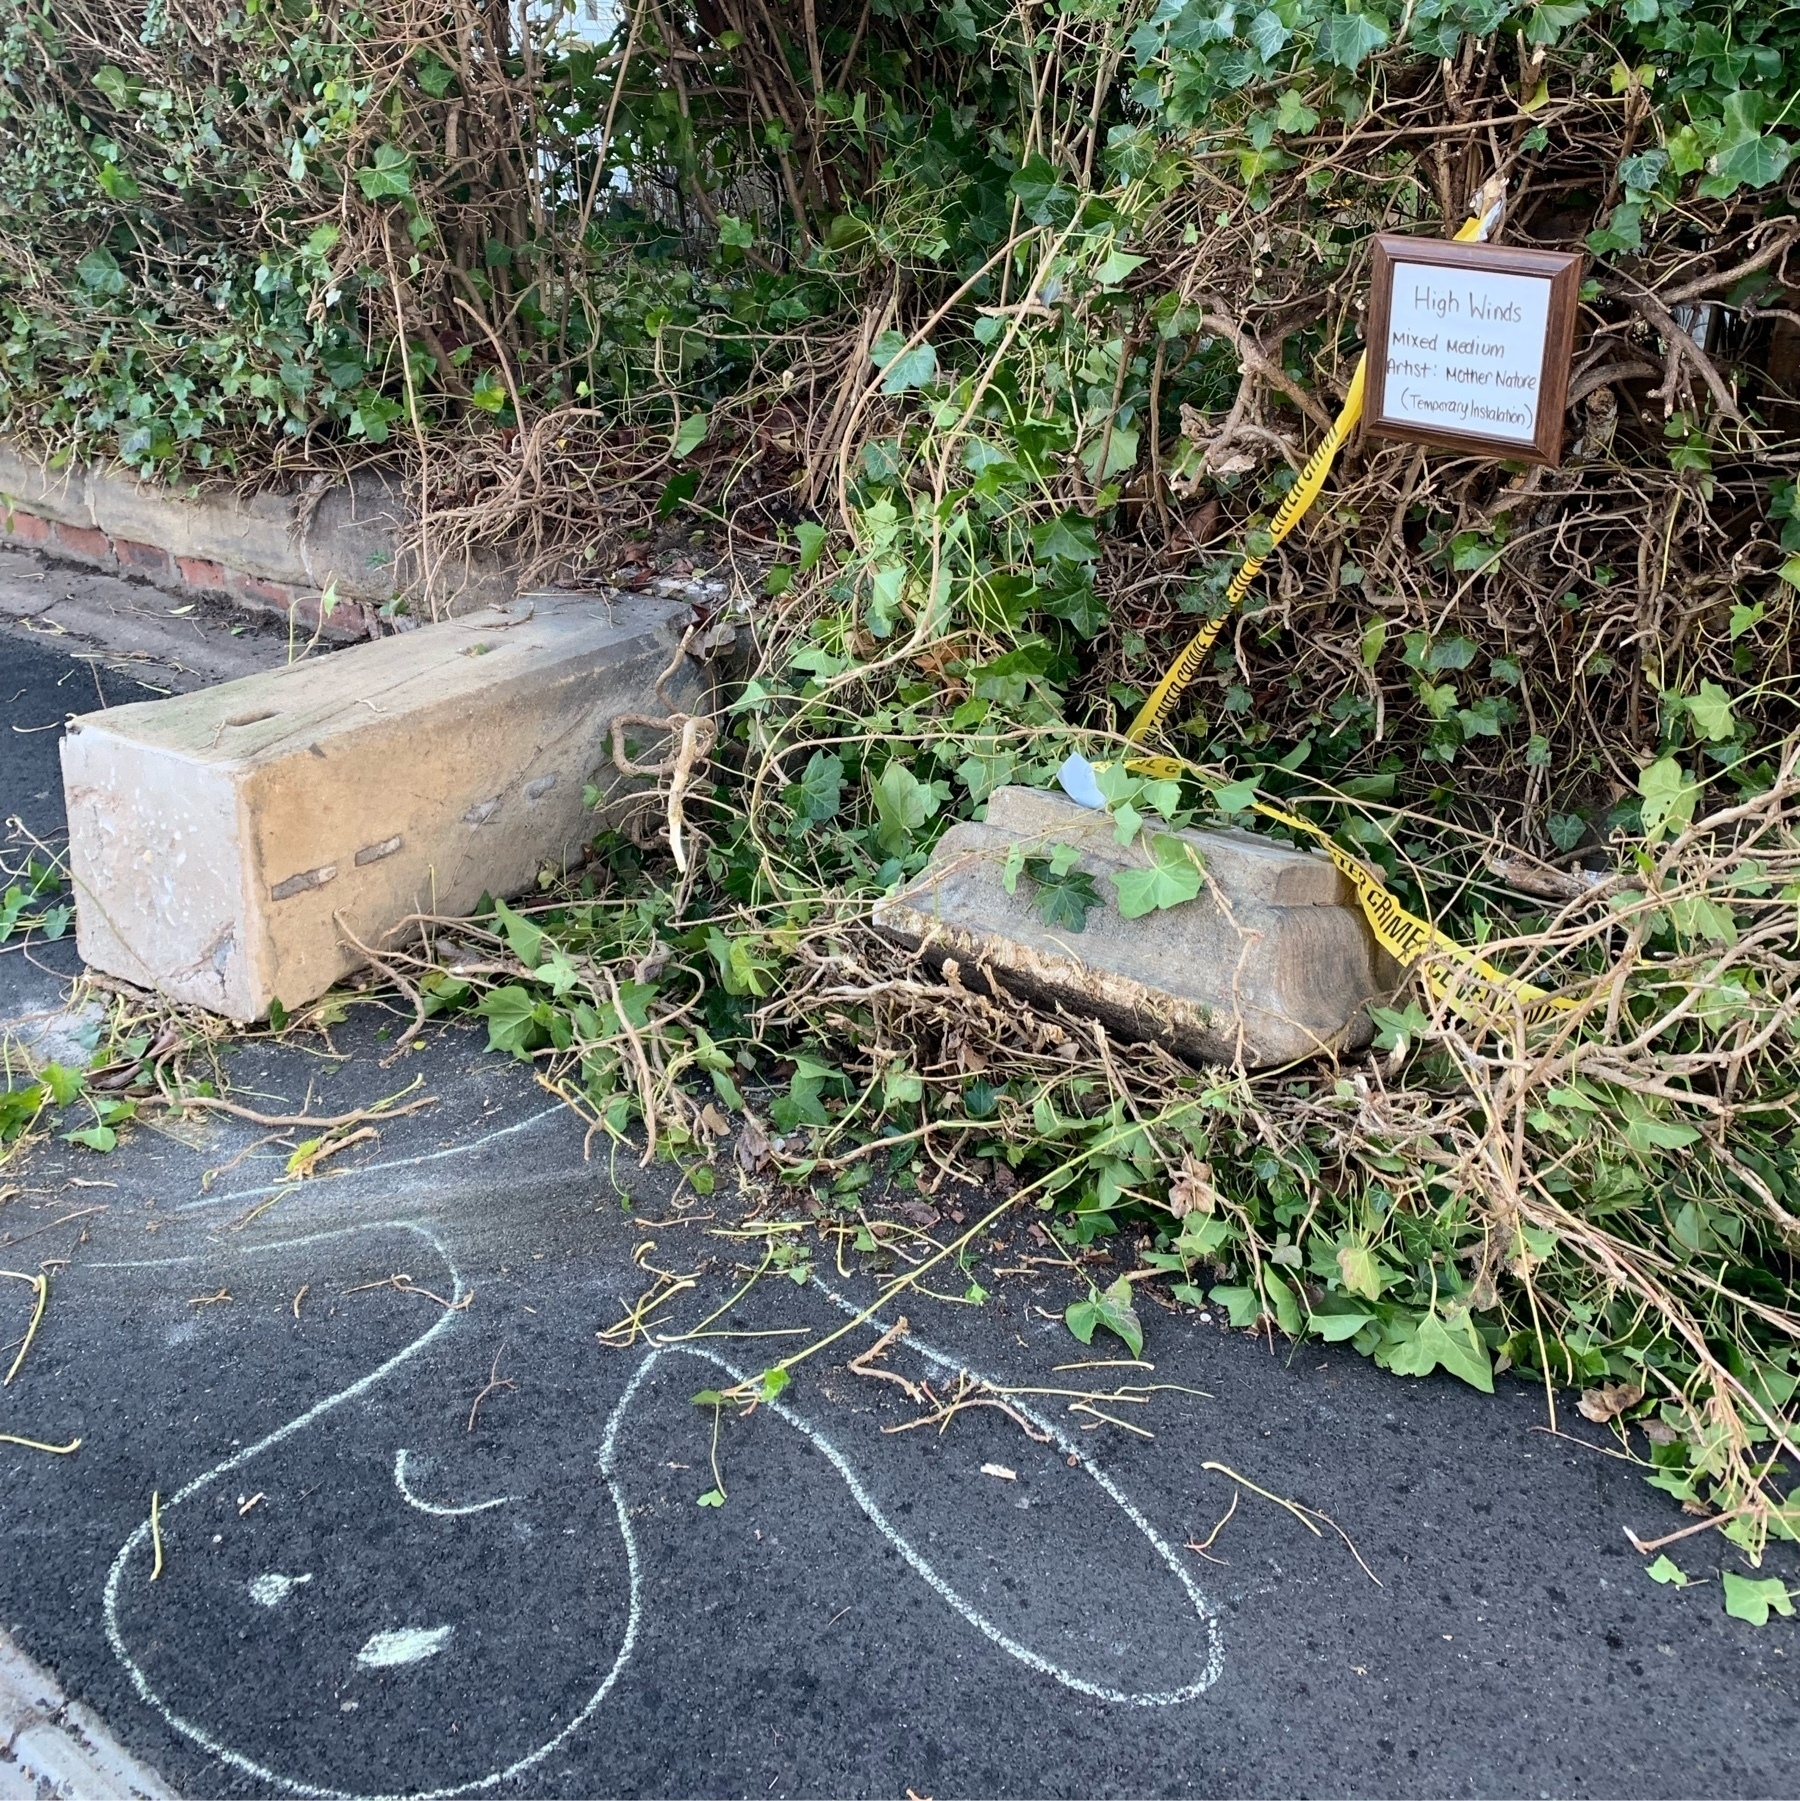 Stone gate post fallen across pavement. Hand written sign describing scene as art work